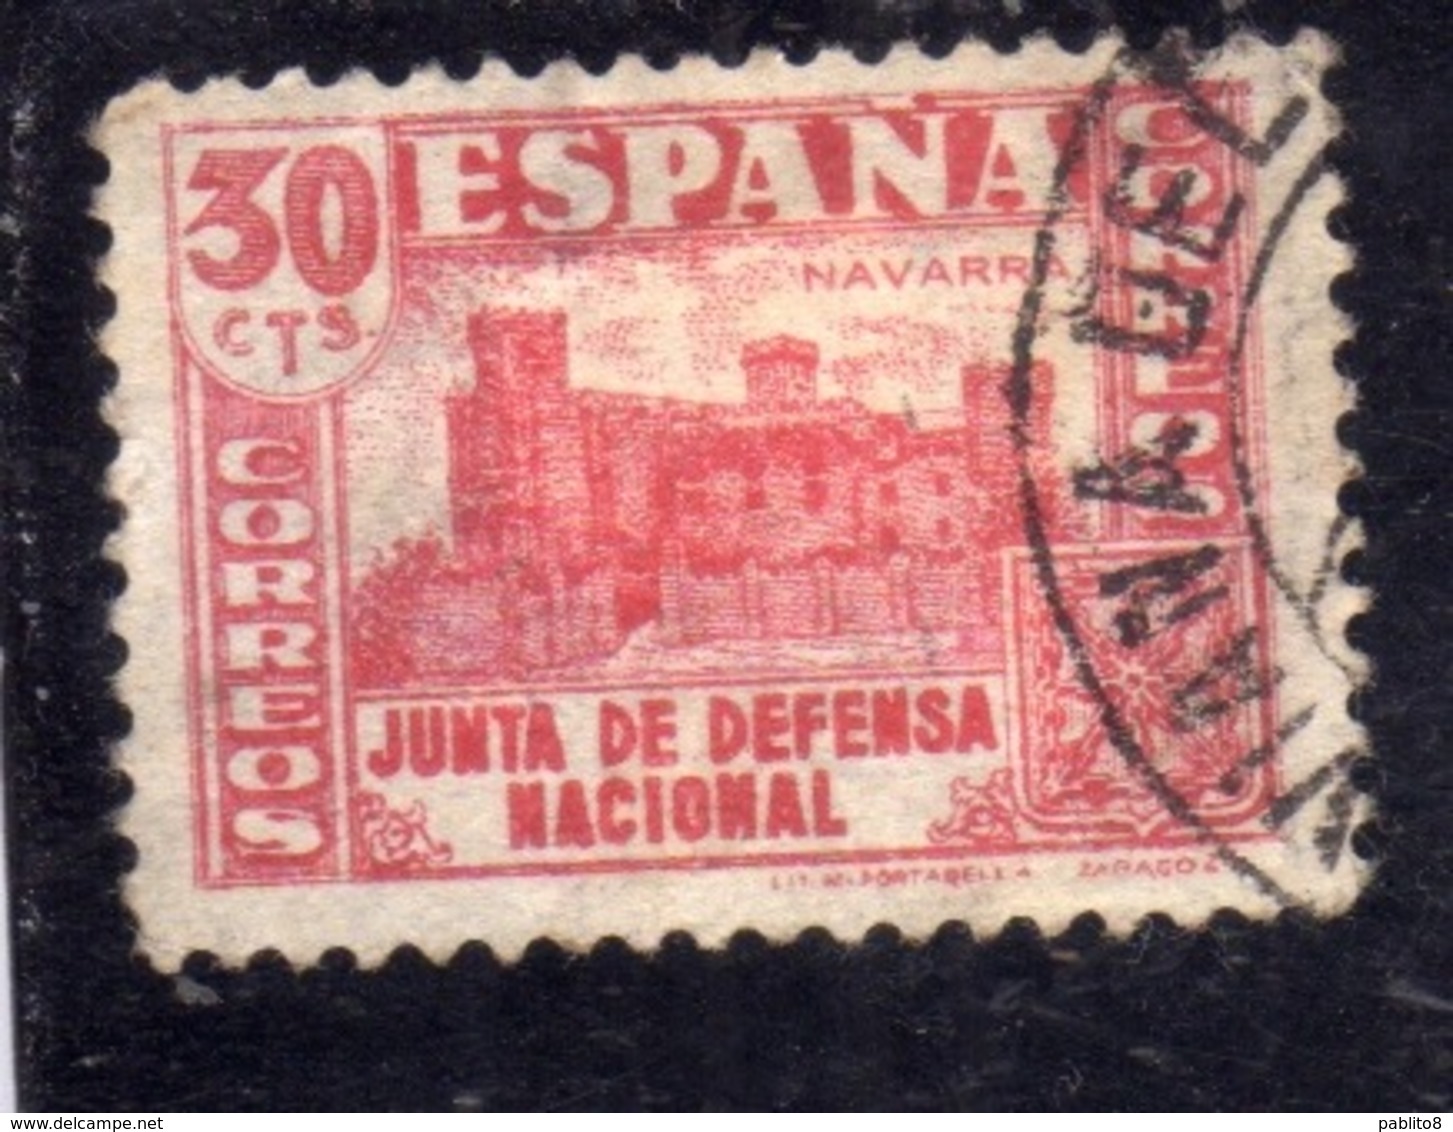 SPAIN ESPAÑA SPAGNA 1936 XAVIER CASTLE NAVARRE JUNTA DE DEFENSA NATIONAL CENT. 30c USED USATO OBLITERE' - Oblitérés